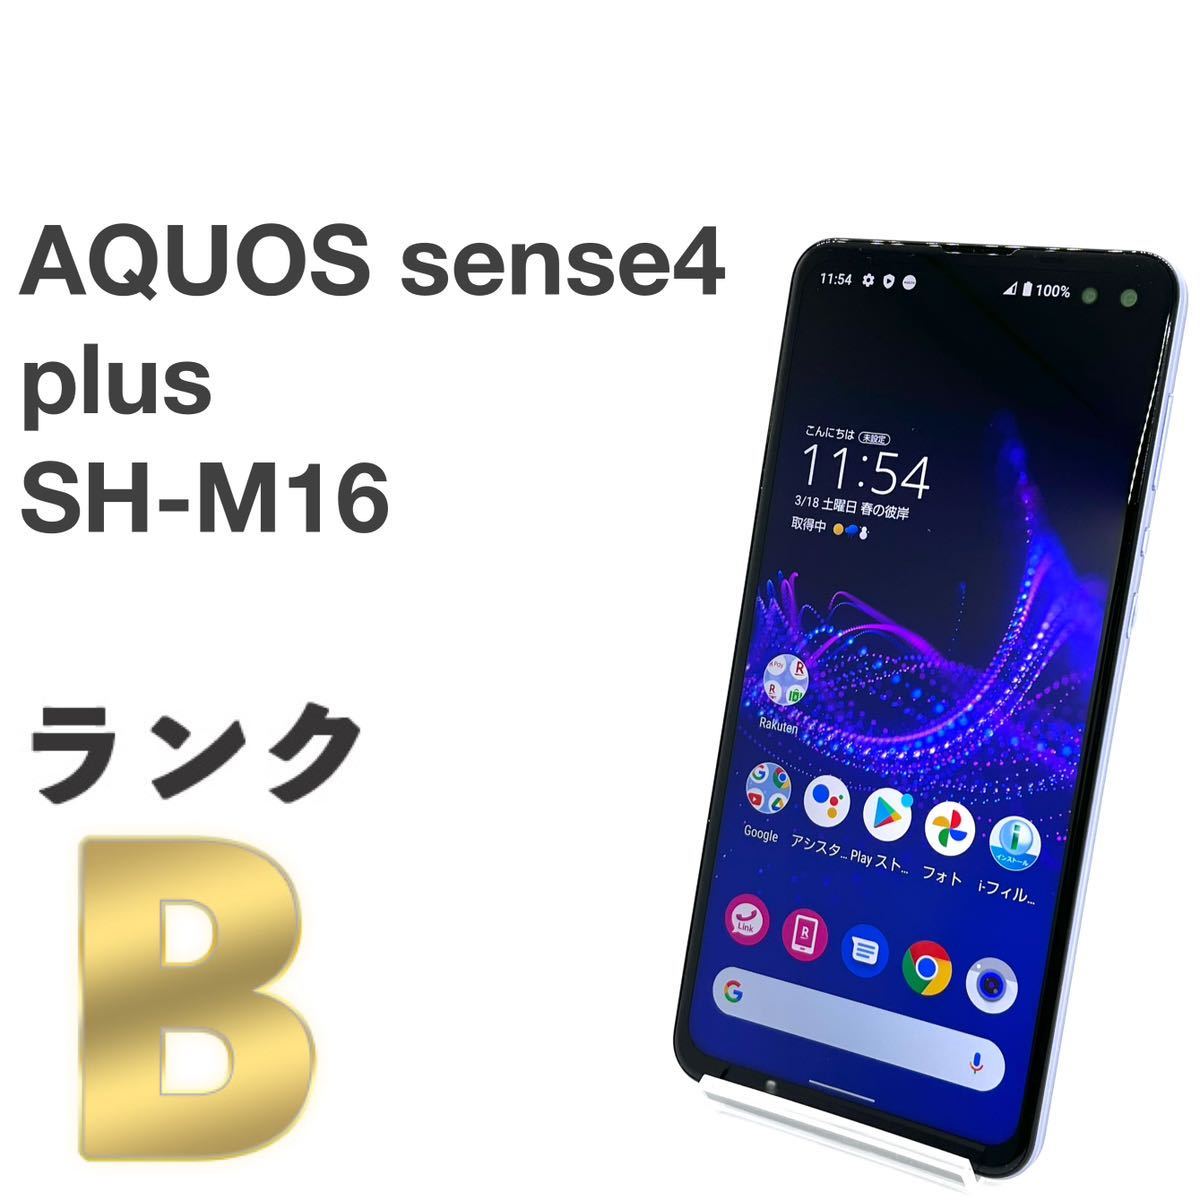 スマートフォン/携帯電話 スマートフォン本体 AQUOS sense4 plus SH-M16 パープル 新品・未開封品 | www.myglobaltax.com